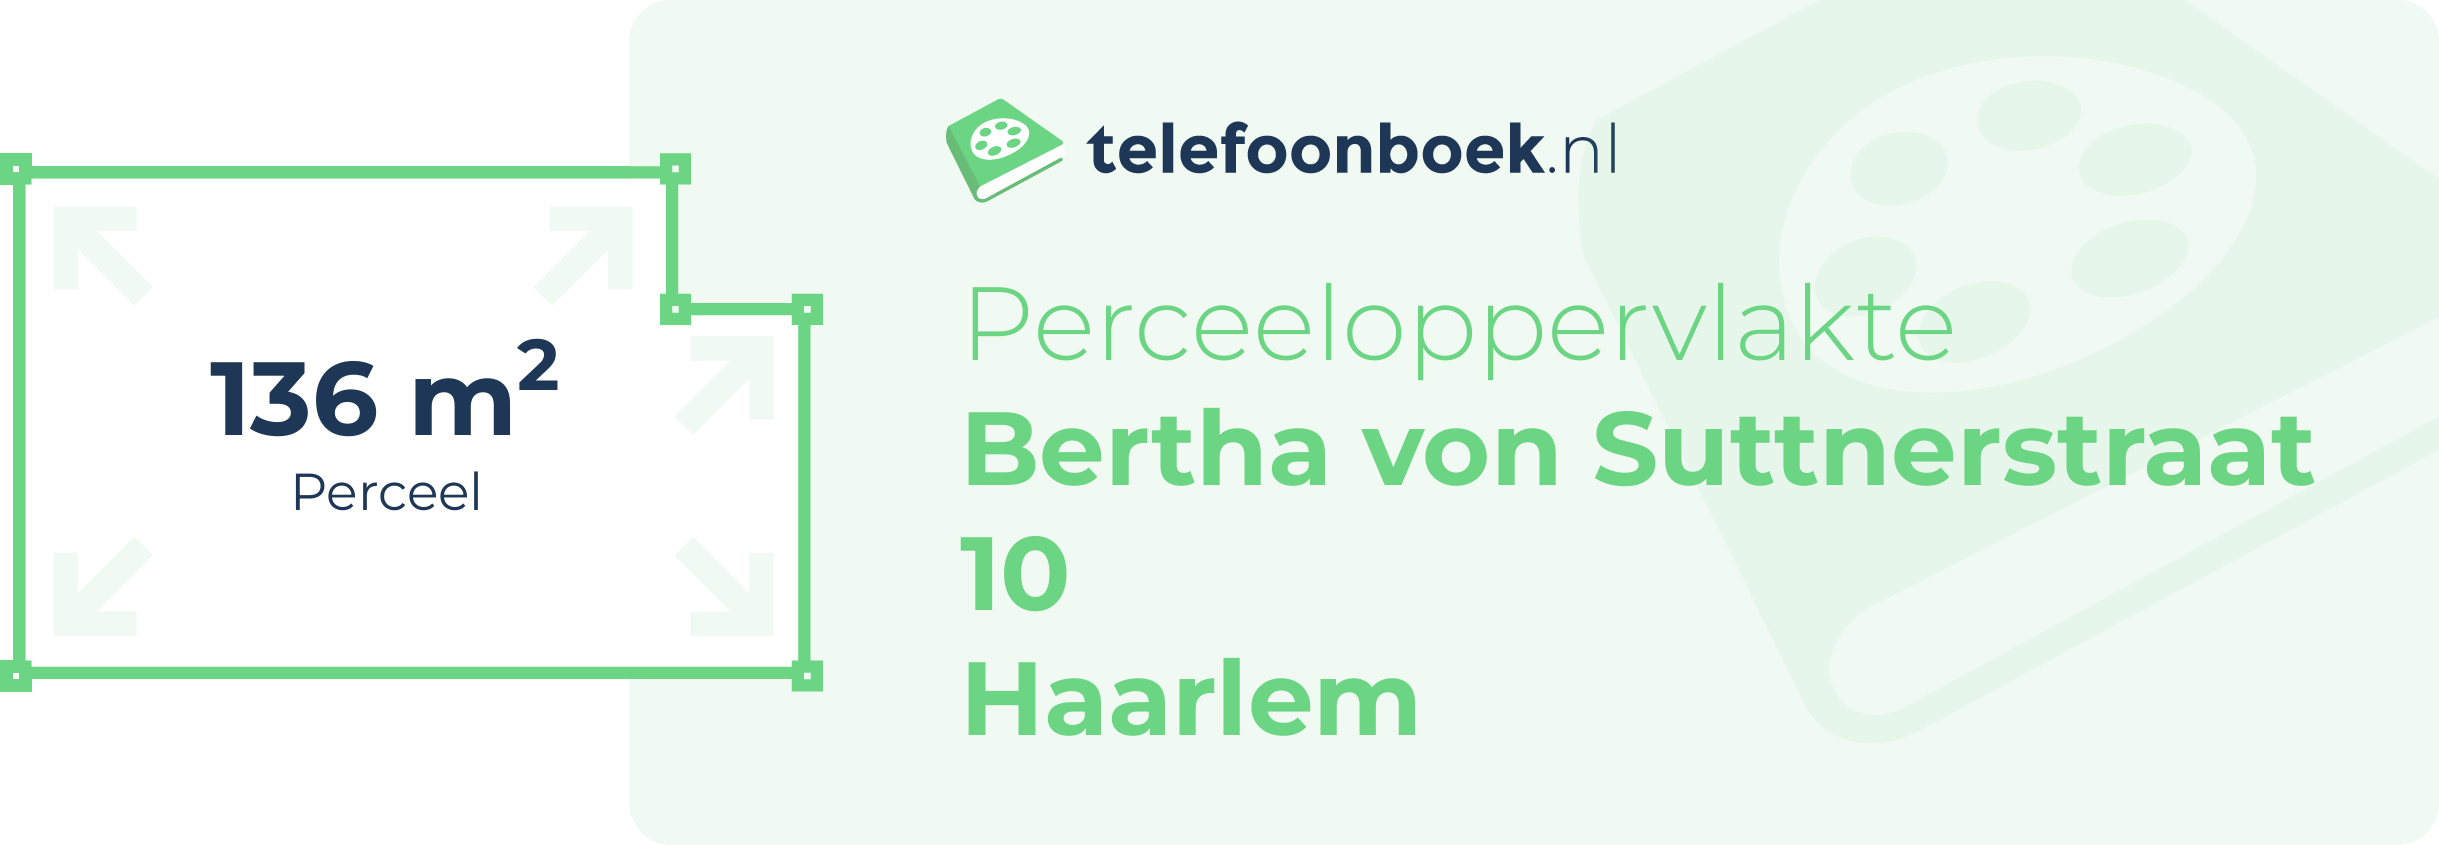 Perceeloppervlakte Bertha Von Suttnerstraat 10 Haarlem